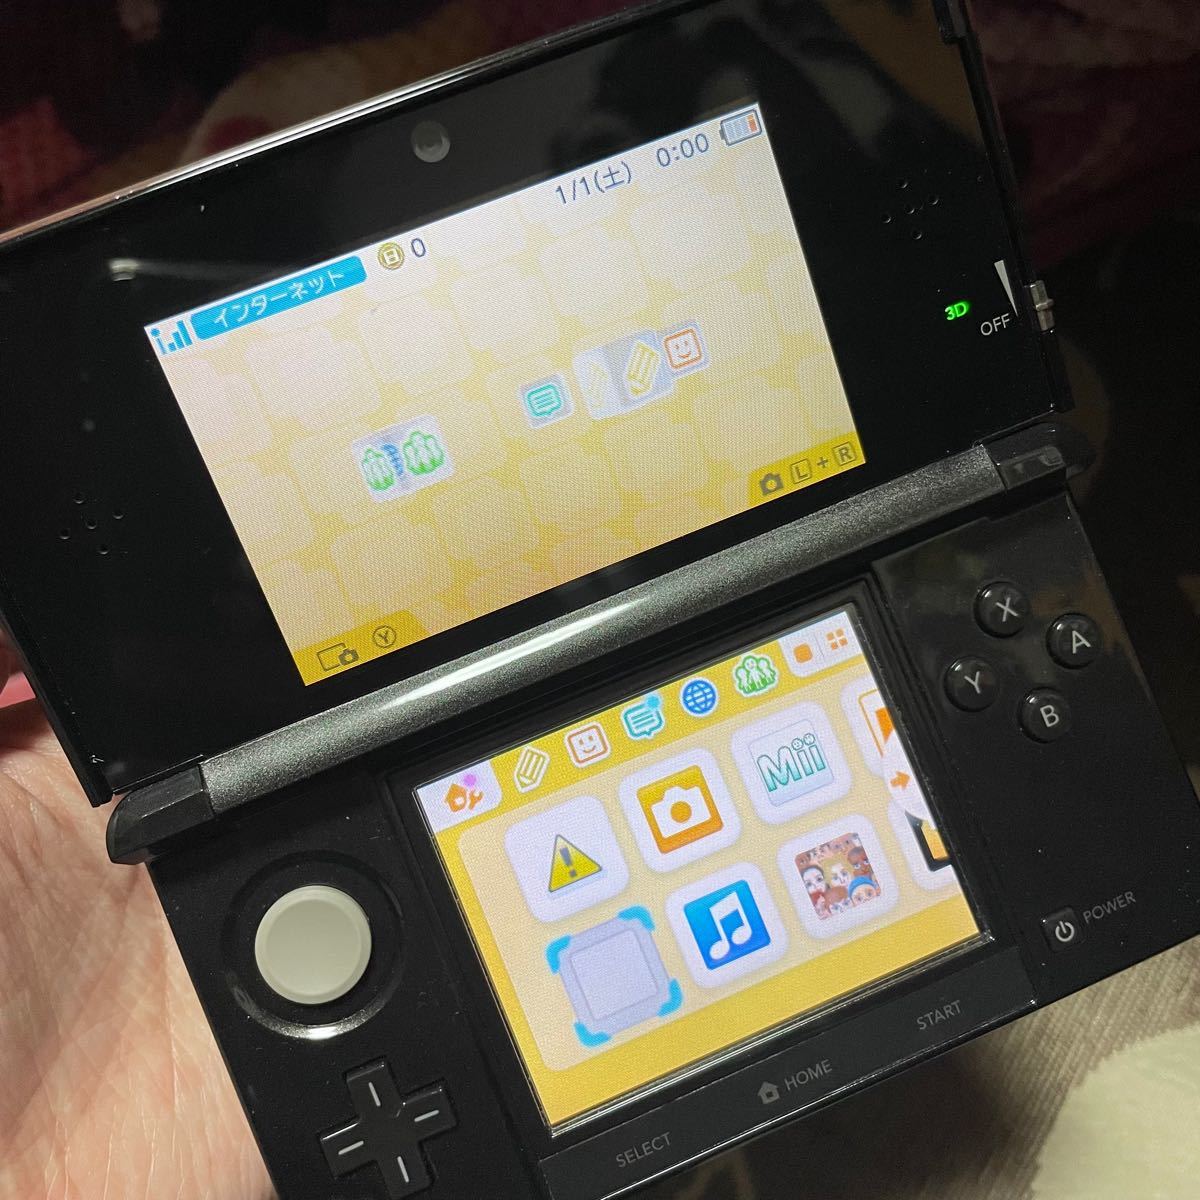 美品 任天堂3DS 本体 ソフトセット カセットセット ニンテンドー3DS 